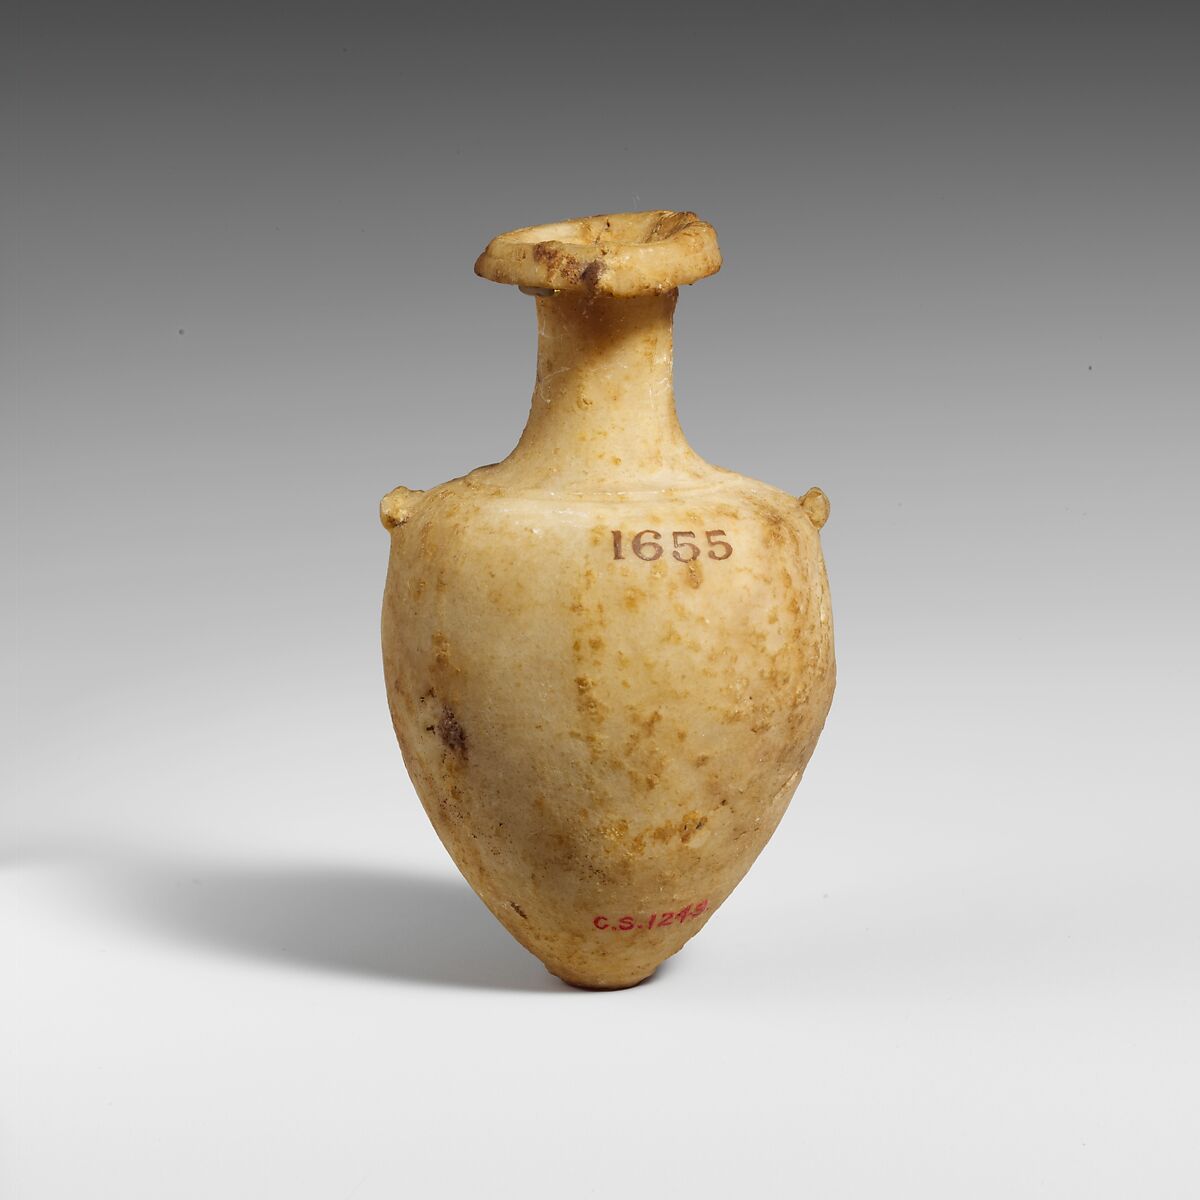 Miniature alabaster amphora (jar), Gypsum (alabaster), Cypriot 